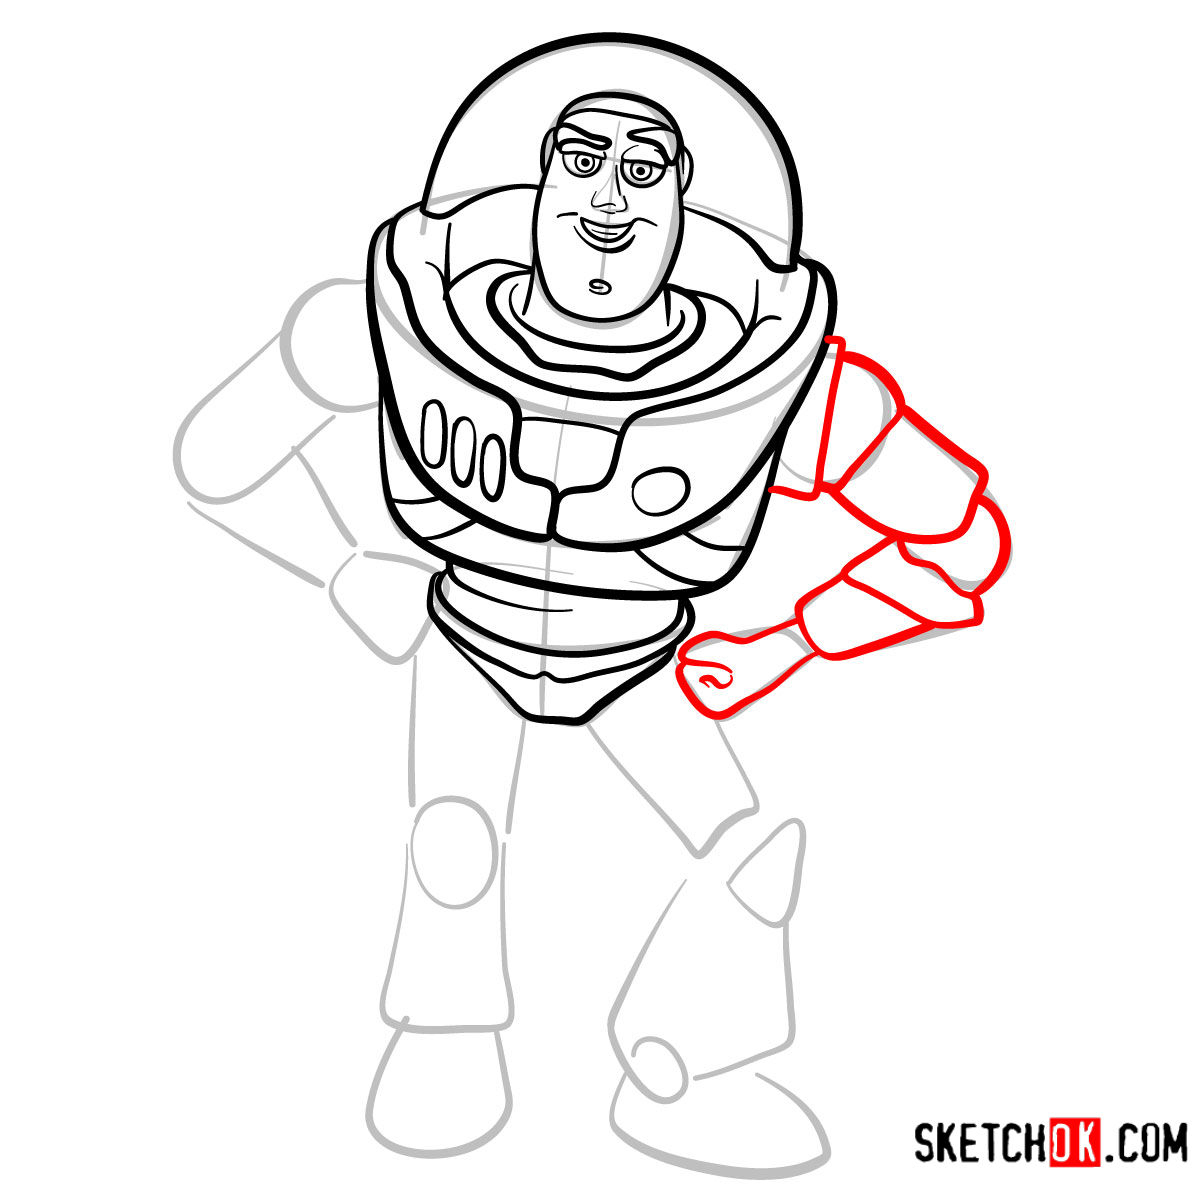 How to draw Buzz Lightyear | Toy Story - step 09